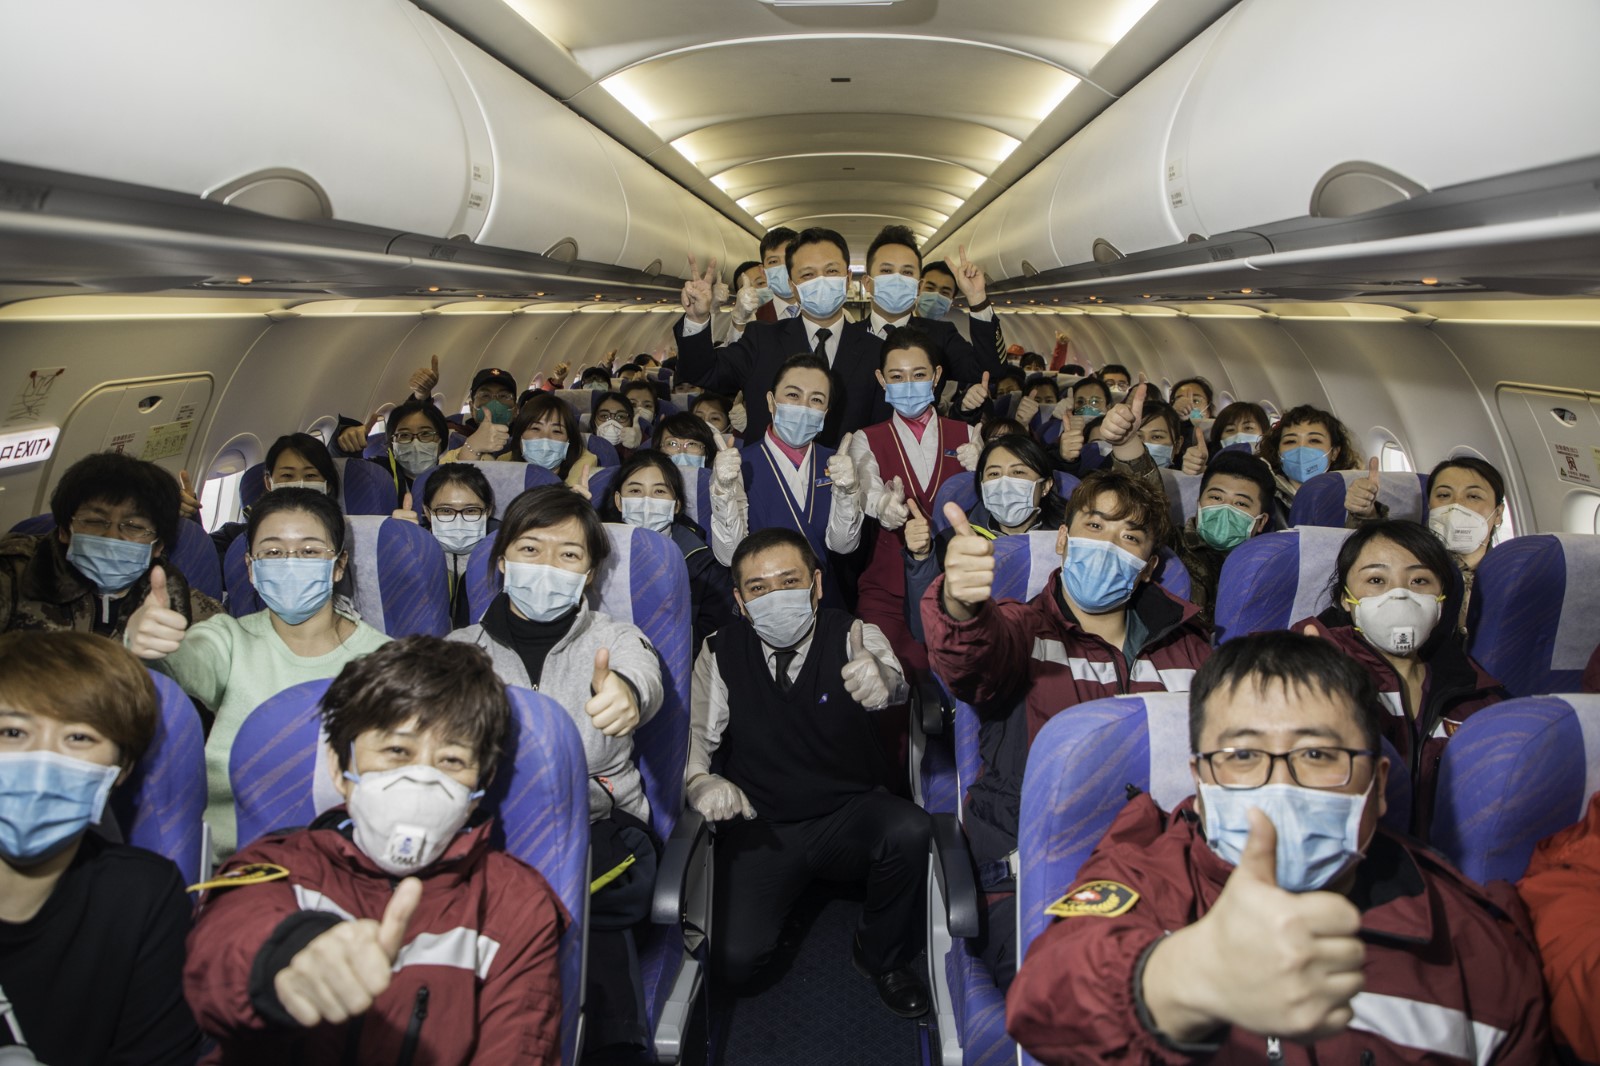 陈松——2020年2月2日第二批医疗队乘坐南航CZ5241航班前往湖北武汉抗击疫情，飞机上医疗队员和机组一同为武汉加油为祖国加油。.jpg